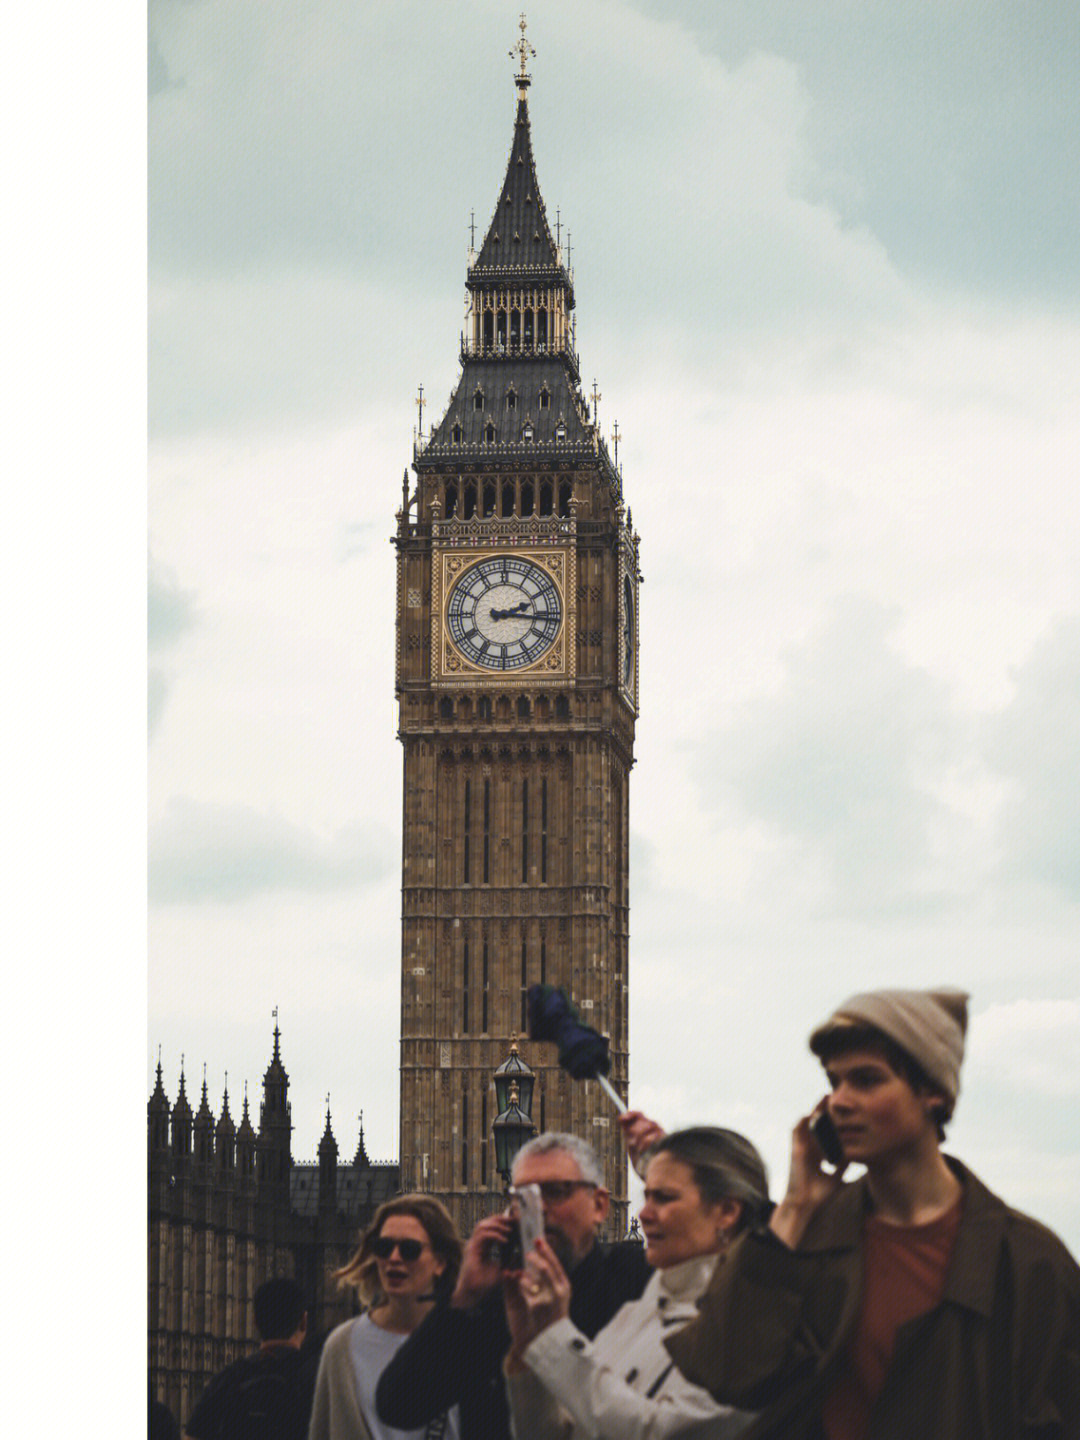 来英国三年以来还是第一次见大本钟